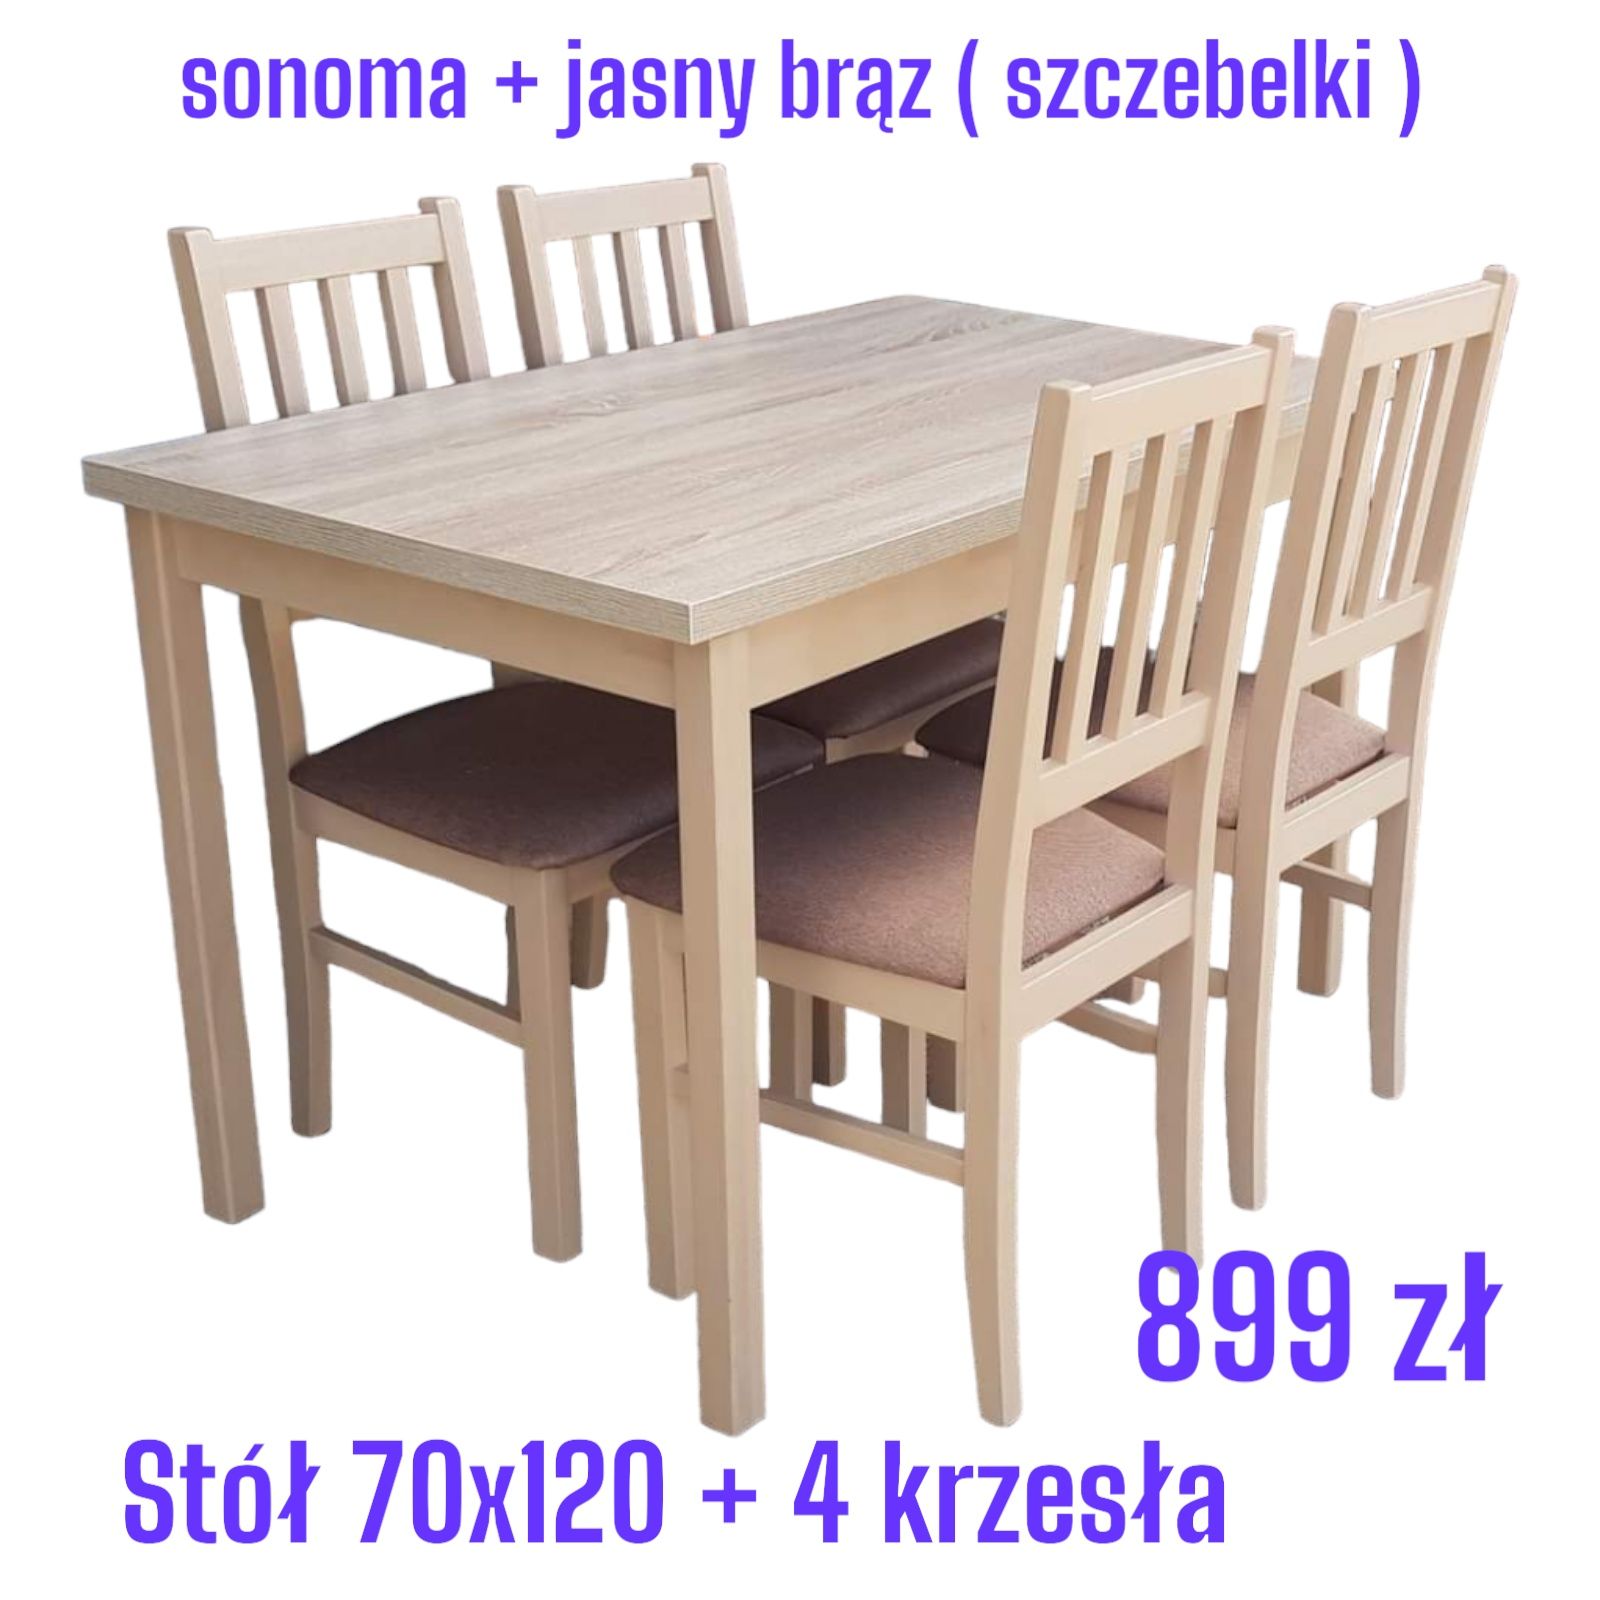 Nowe: Stół 70x120 + 4 krzesła, orzech + beż ( szczebelki) dostawa PL